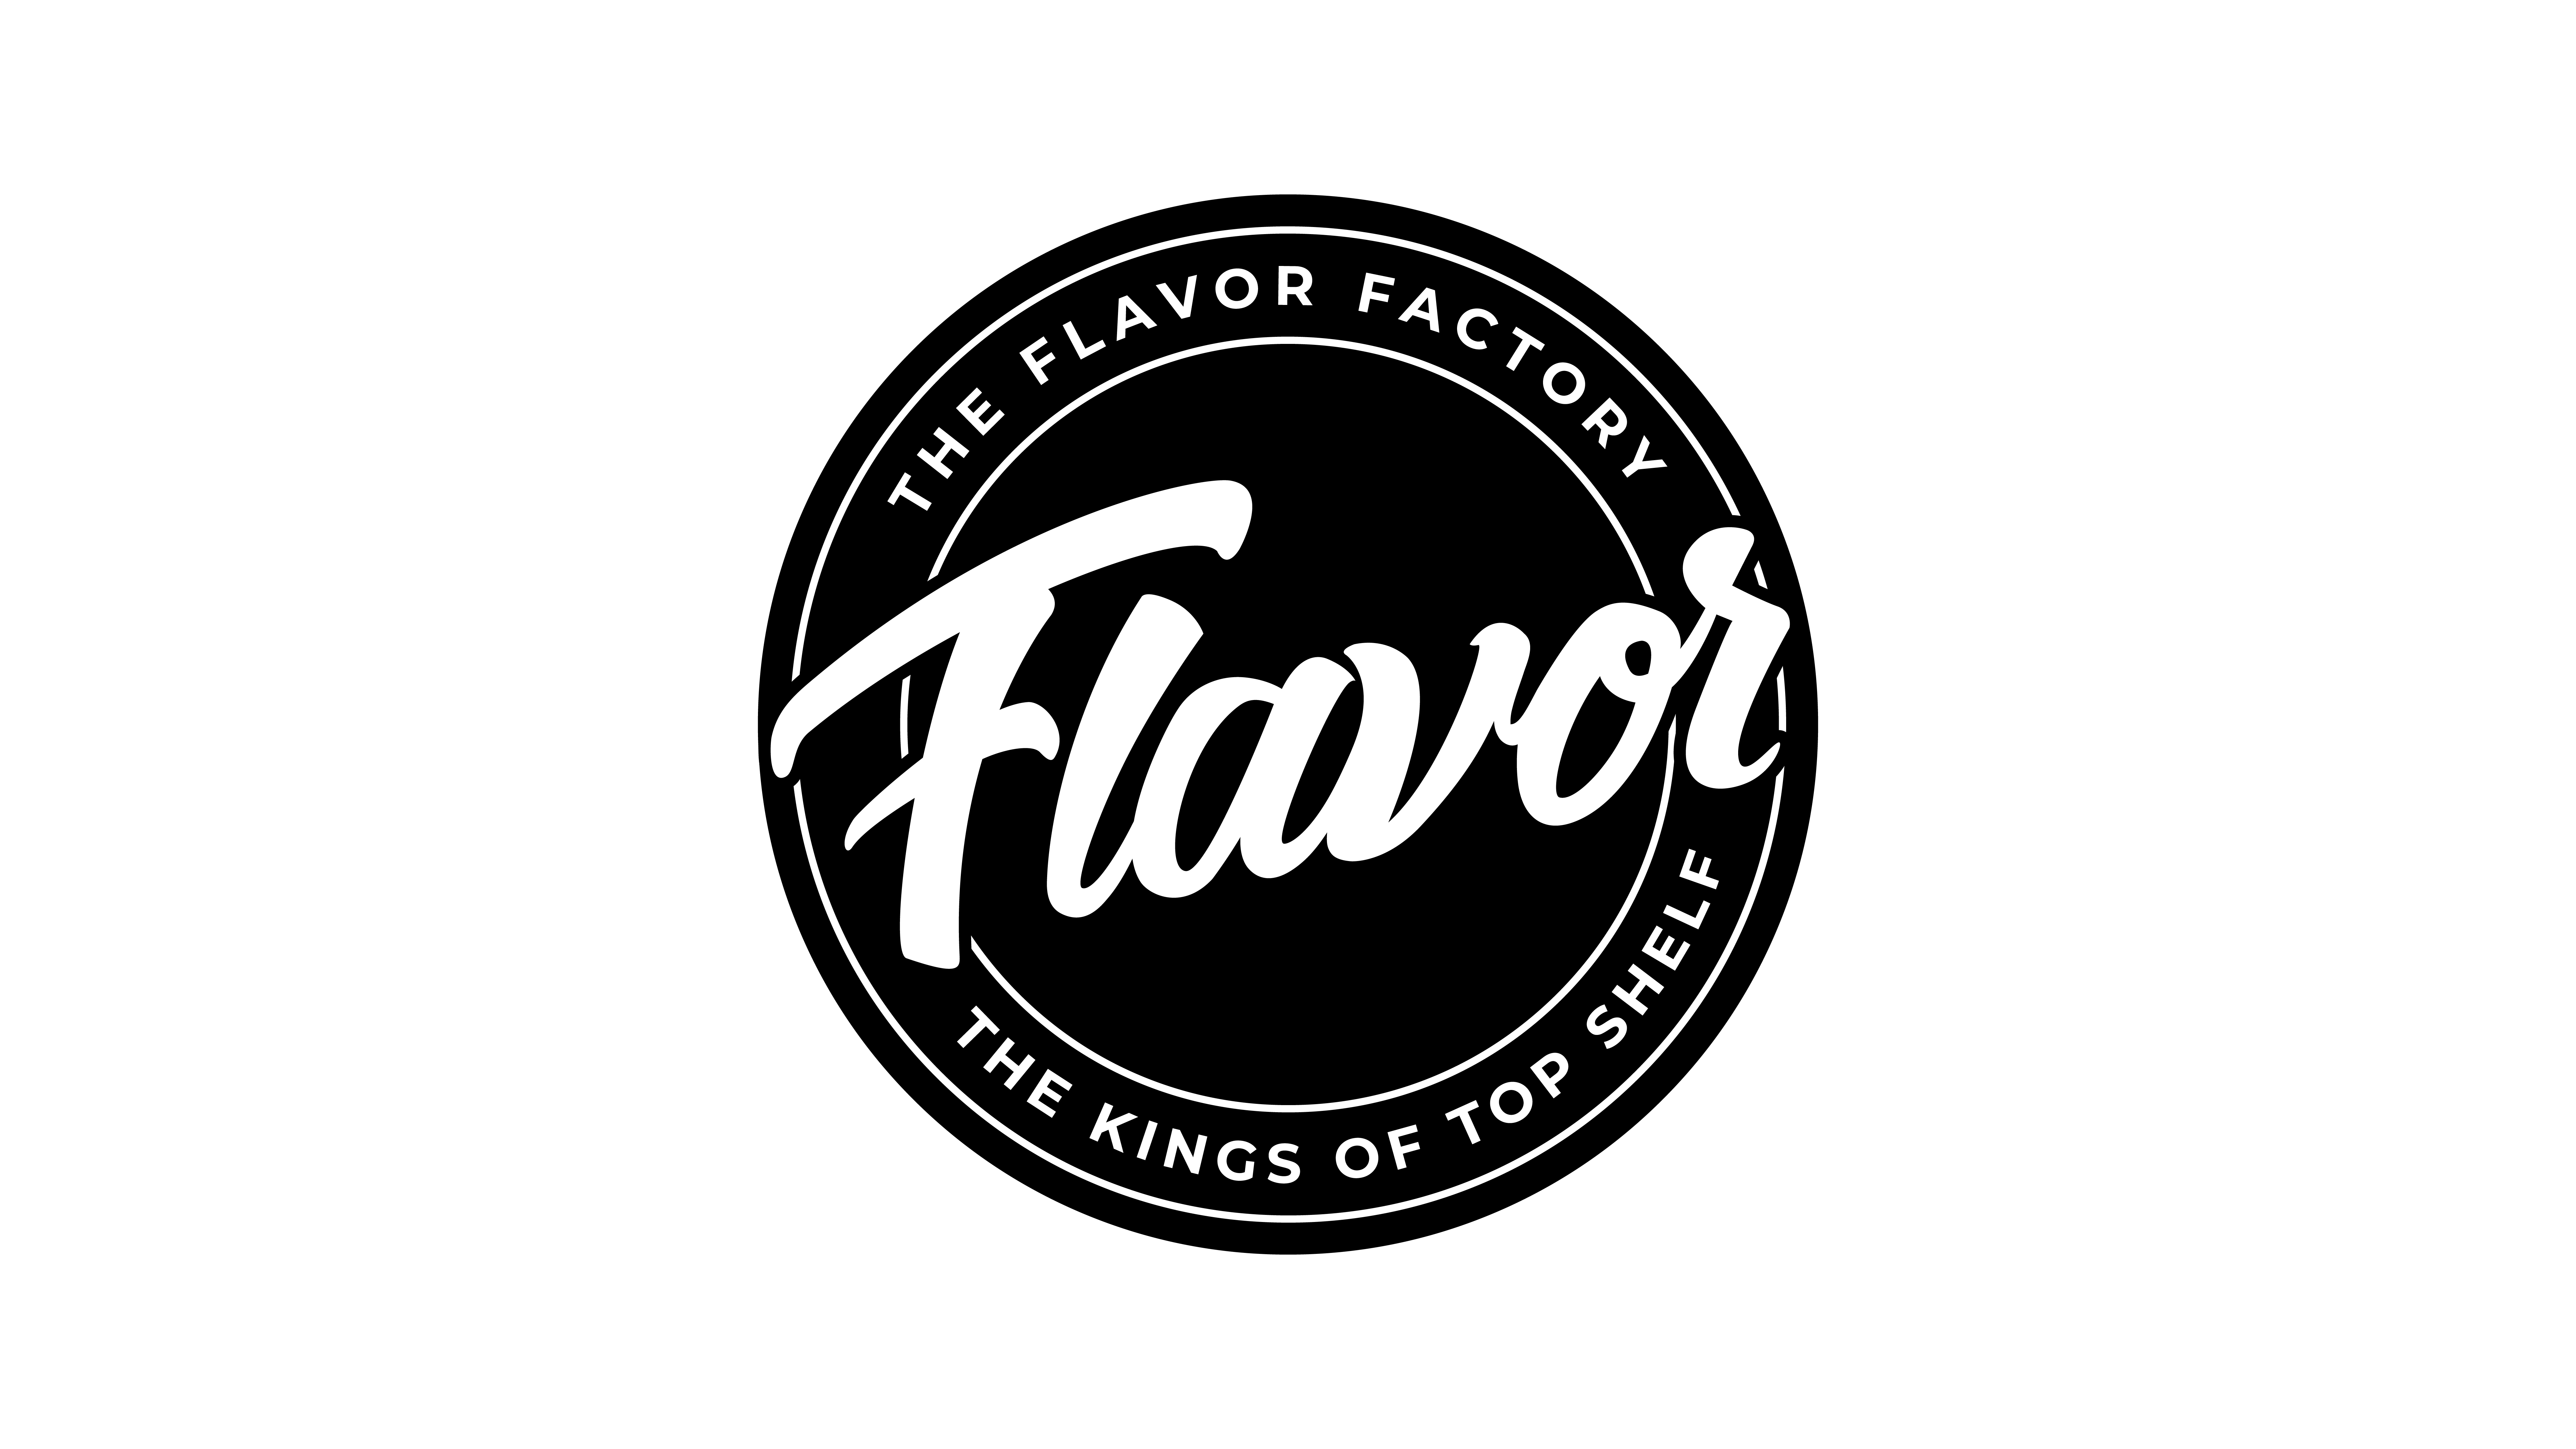 The Flavor Factory Dispensary logo